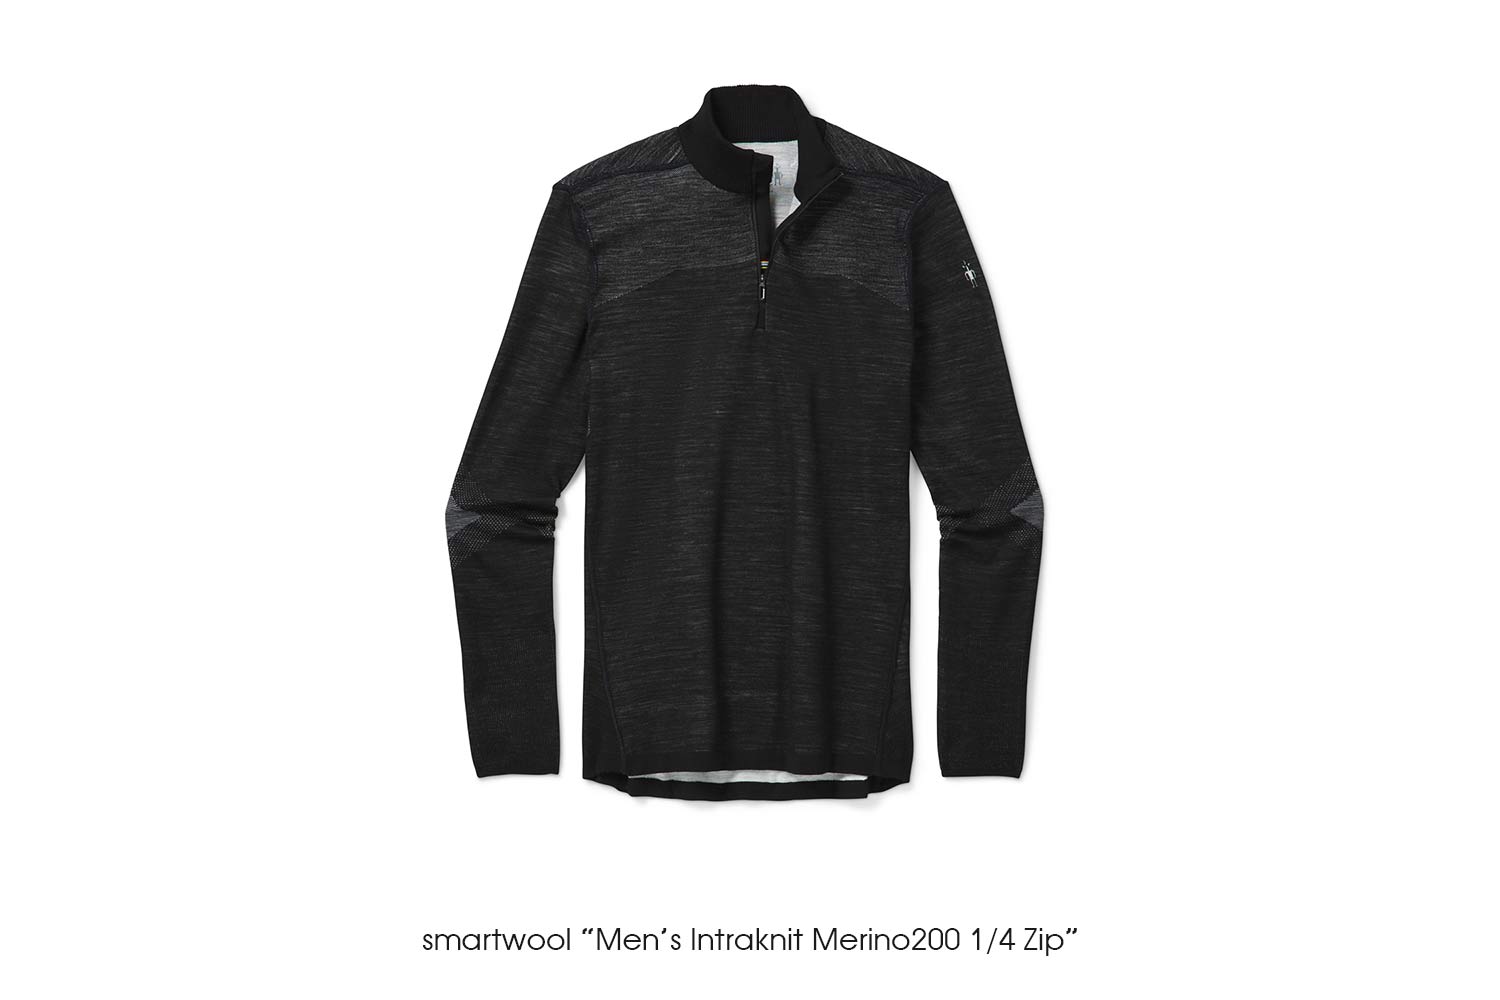 smartwool "Men's Intraknit Merino200 1/4 Zip"